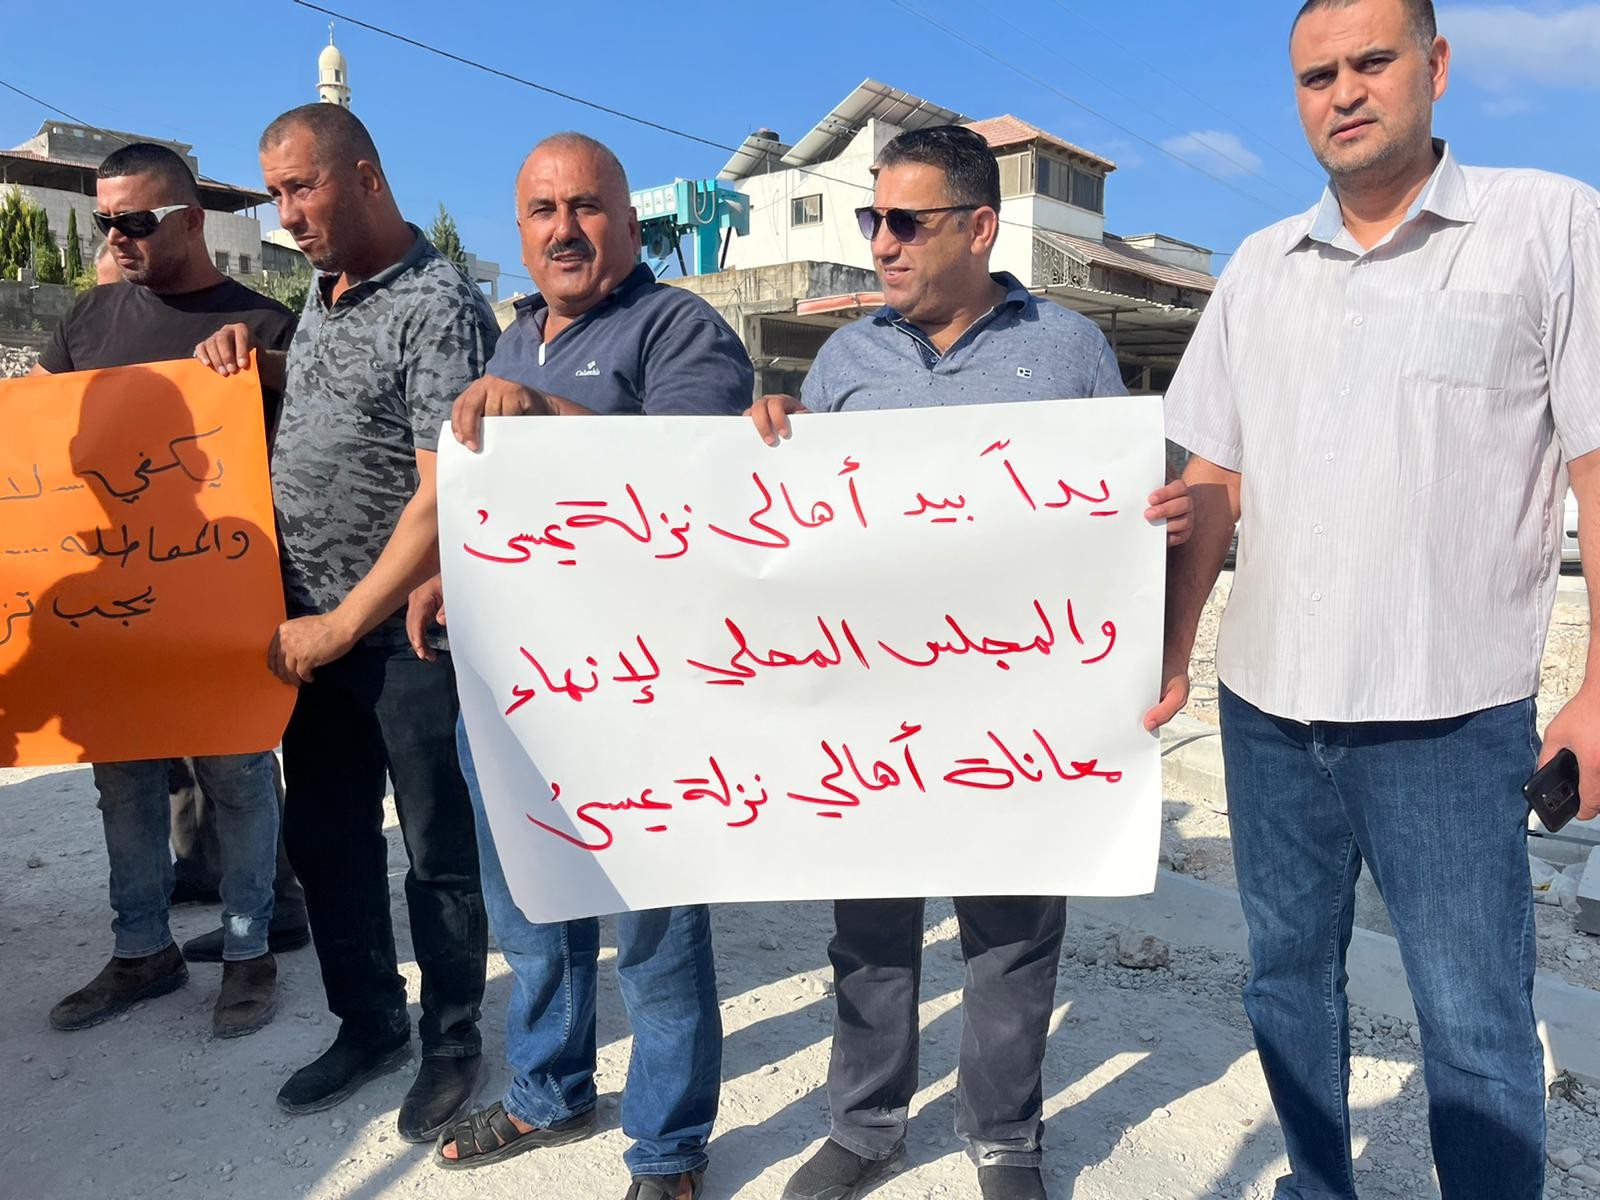 وقفة احتجاجية في نزلة عيسى للمطالبة بإنجاز مشروع تعبيد الشارع الرئيسي.jpg